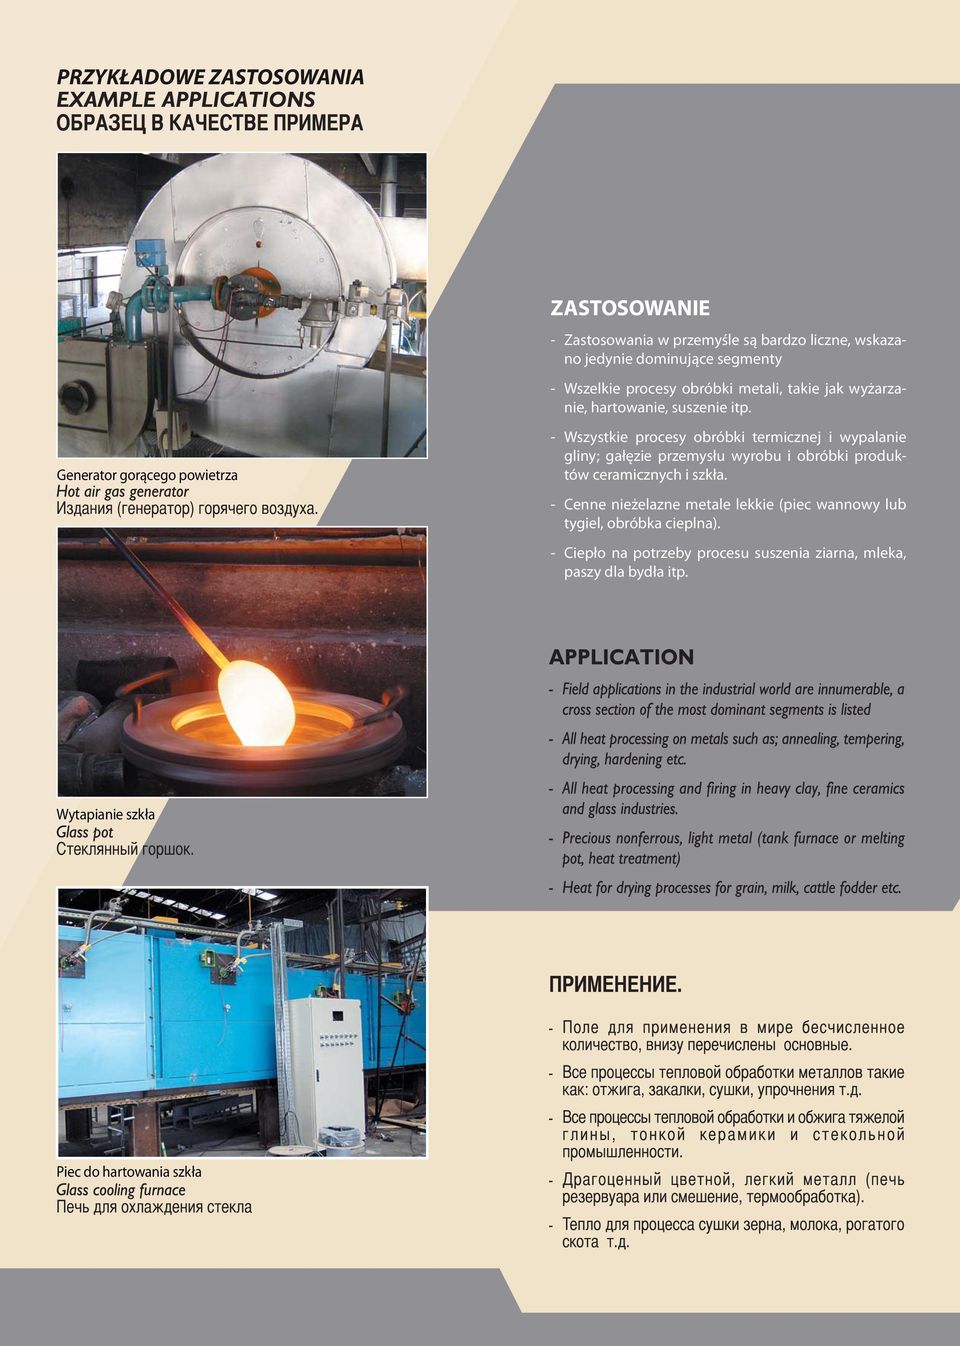 Generator gorącego powietrza - Wszystkie procesy obróbki termicznej i wypalanie gliny; gałęzie przemysłu wyrobu i obróbki produktów